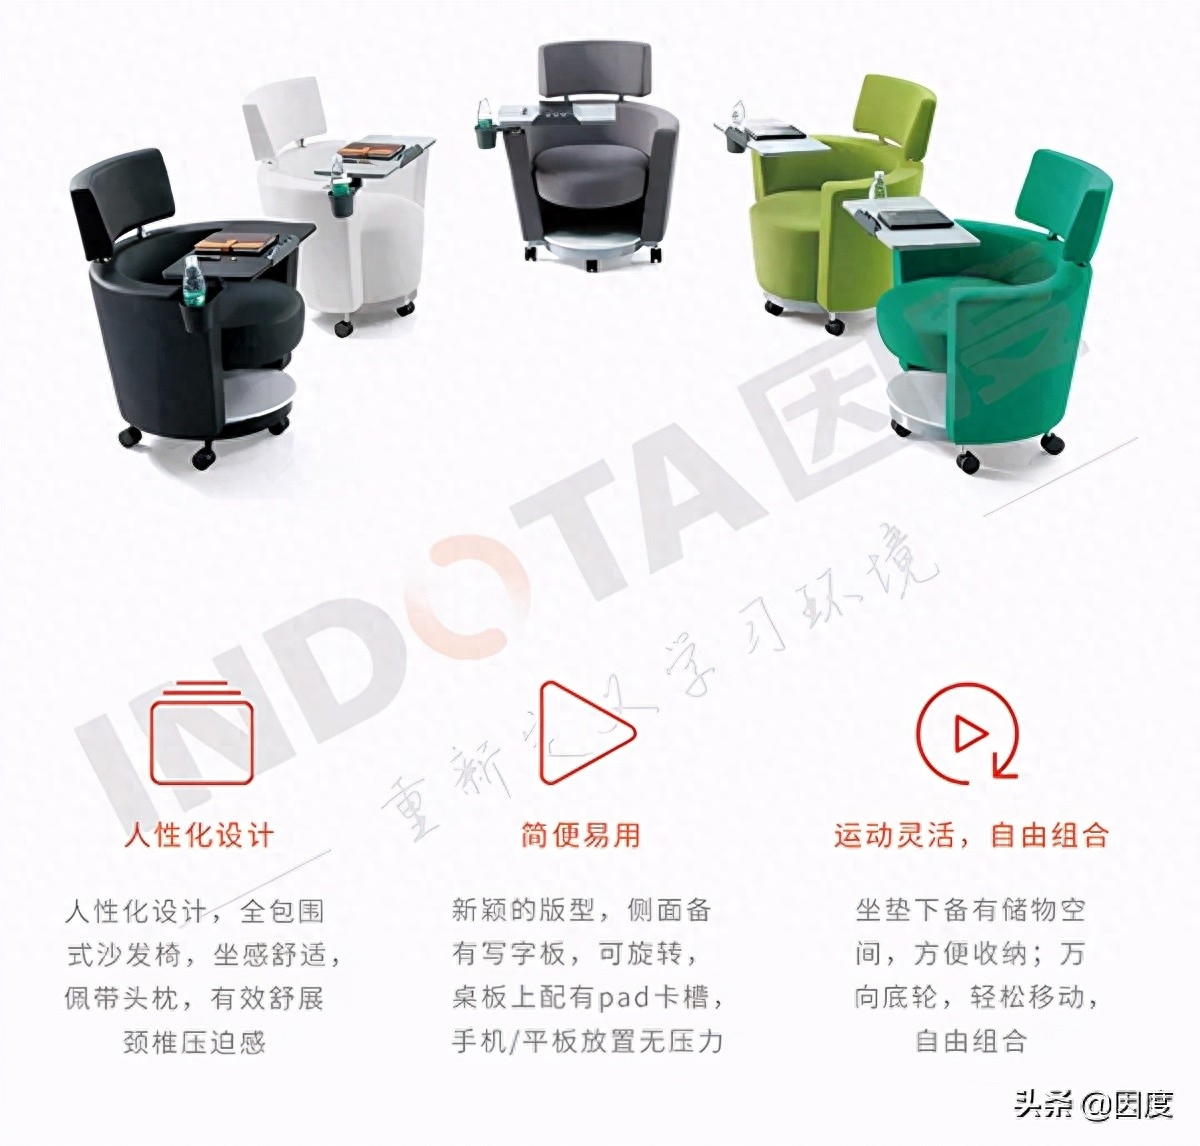 互动型沙发椅椅子是人们生活中必不可少且紧密陪伴的一件人造工具，设计师在设计它时不仅要充分考虑人机工程学、美学，同时还要对材料、结构（组装和拆卸）、回收再利用等方面